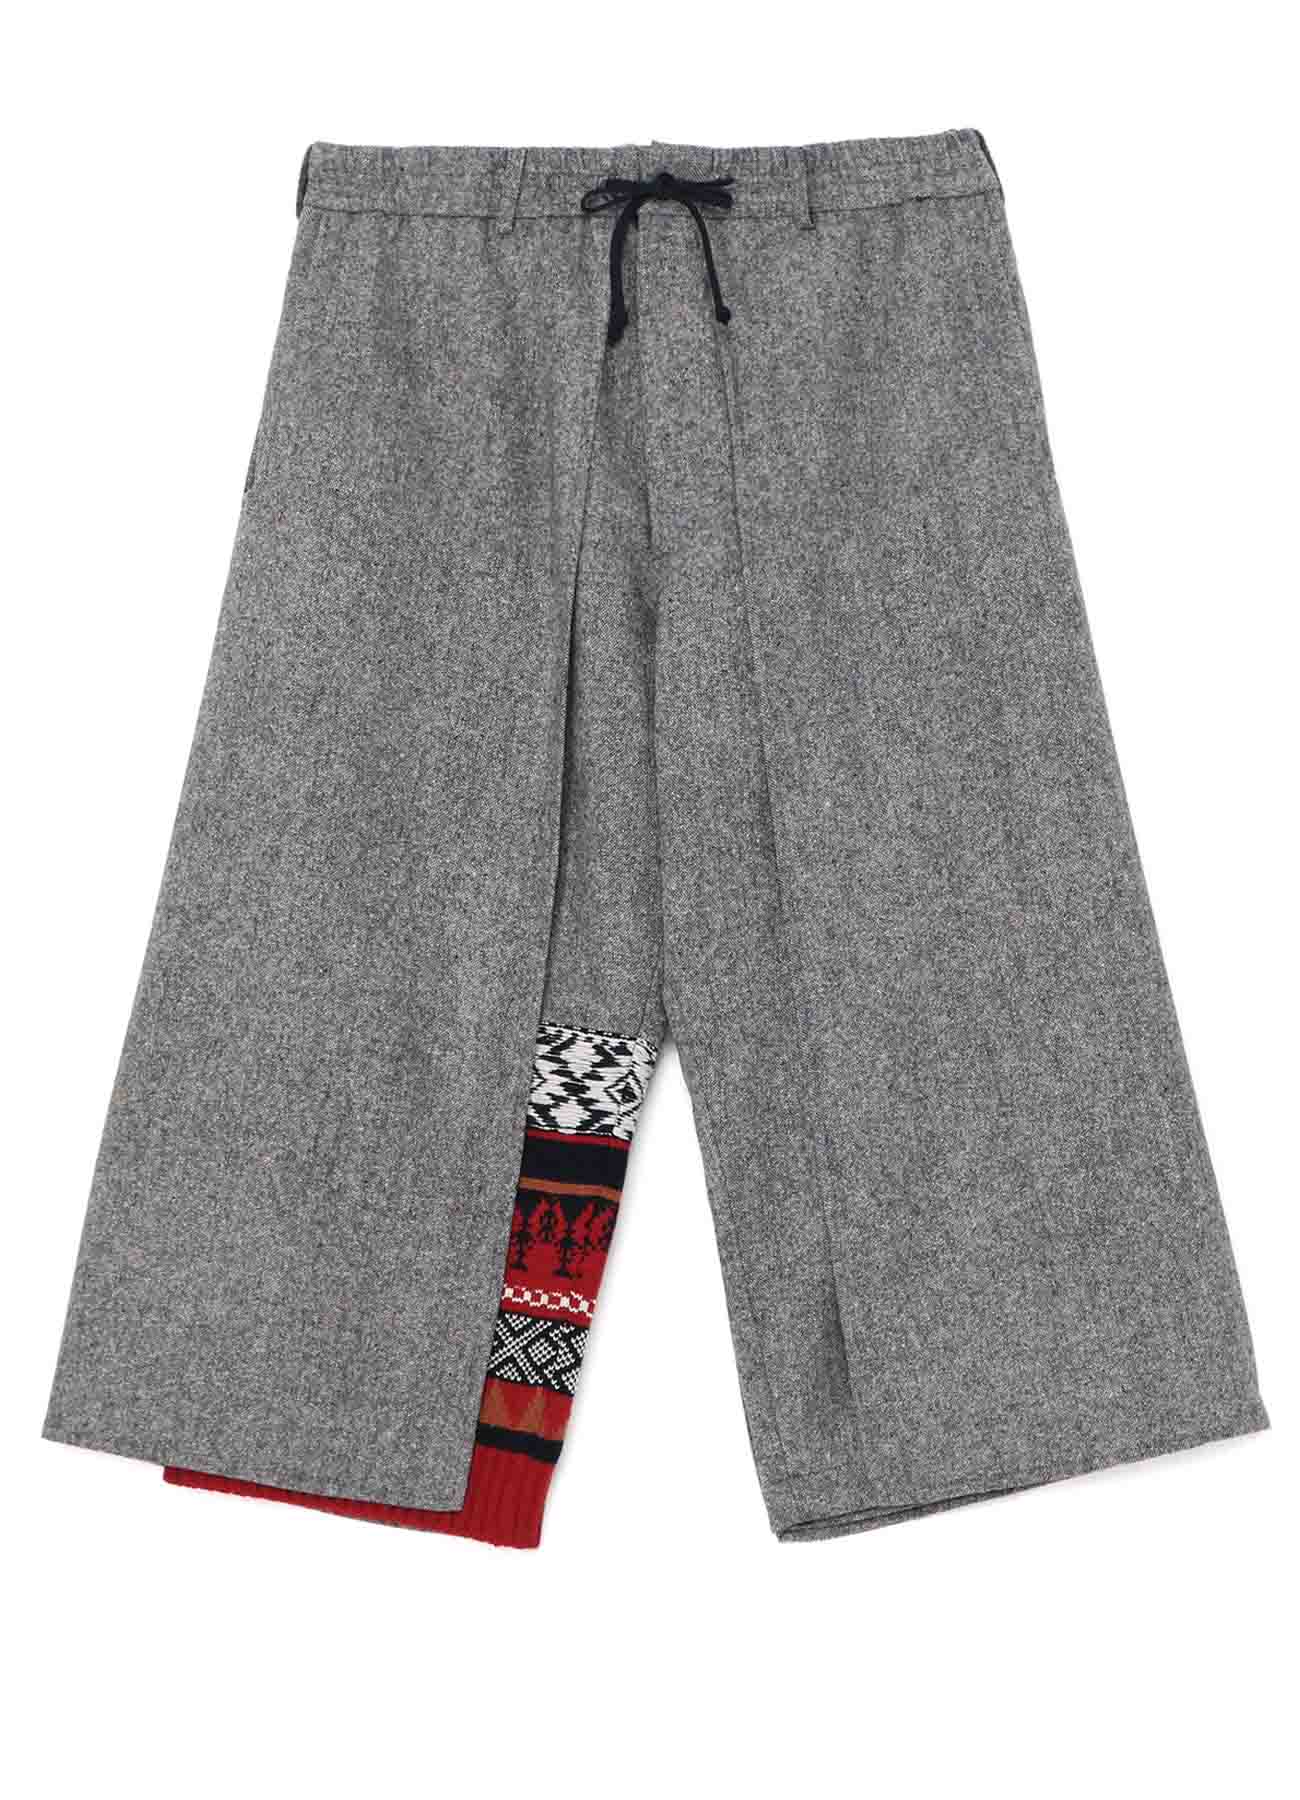 Etermine Nep Tweed + Nordic Pattern Knit Wrap Pants